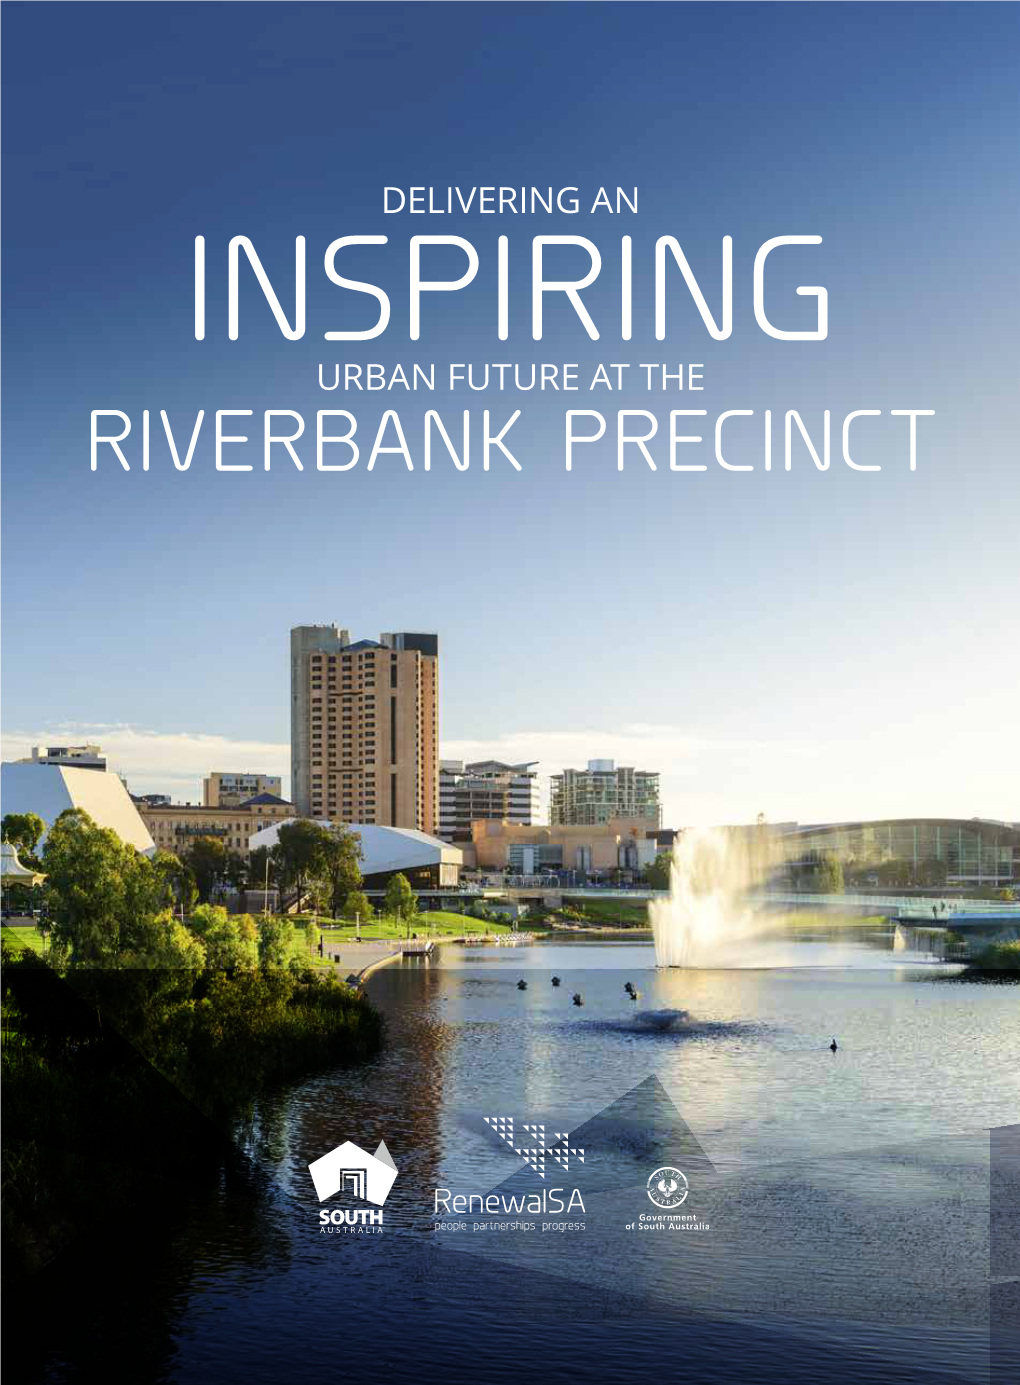 Riverbank Precinct